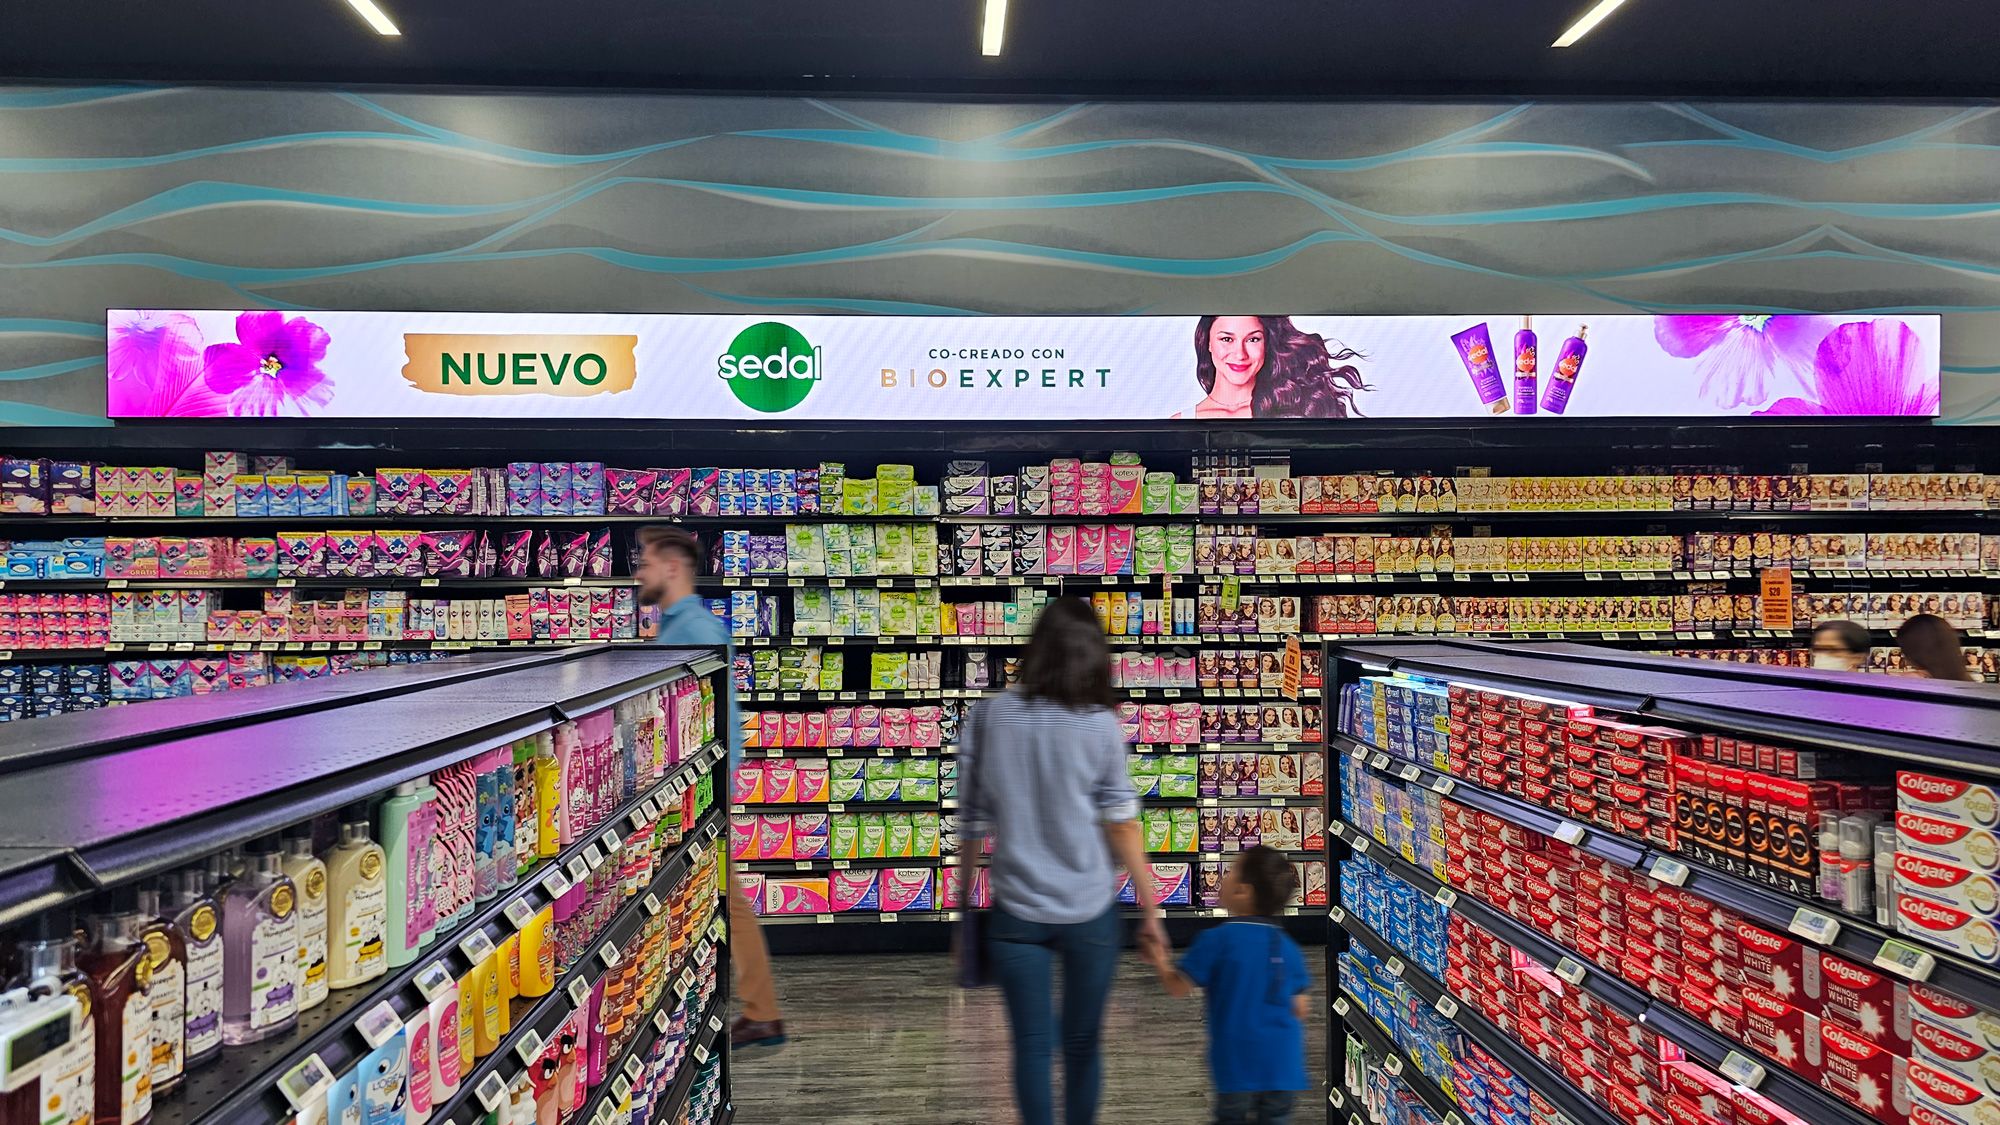 in-Store Media llegará a 3M de consumidores con nuevo circuito de publicidad digital en La Comer